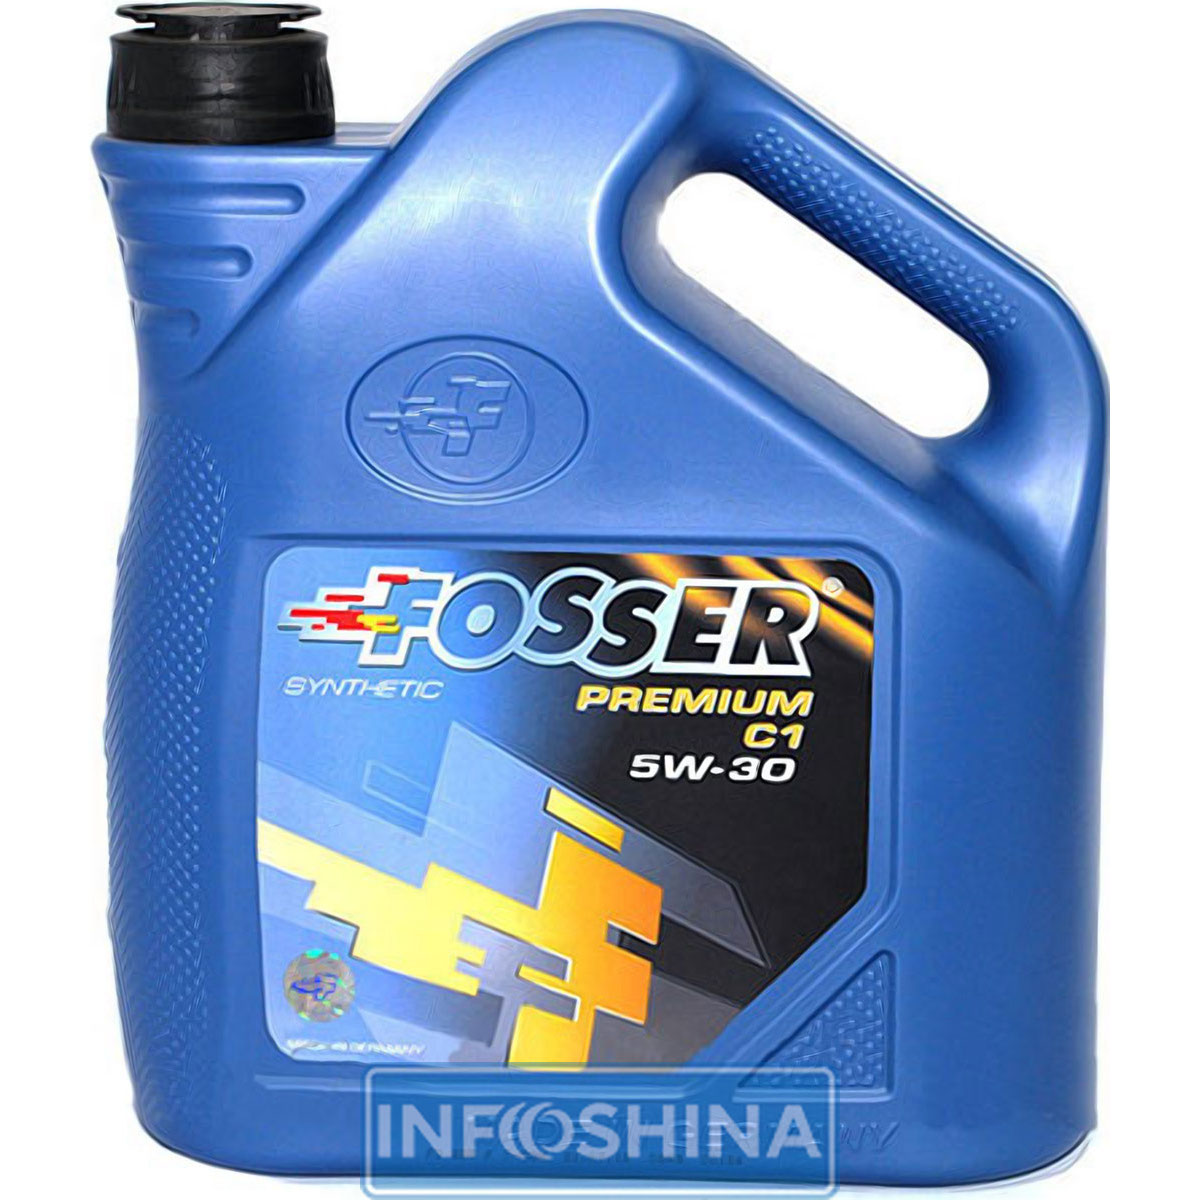 Fosser Premium C1 5W-30